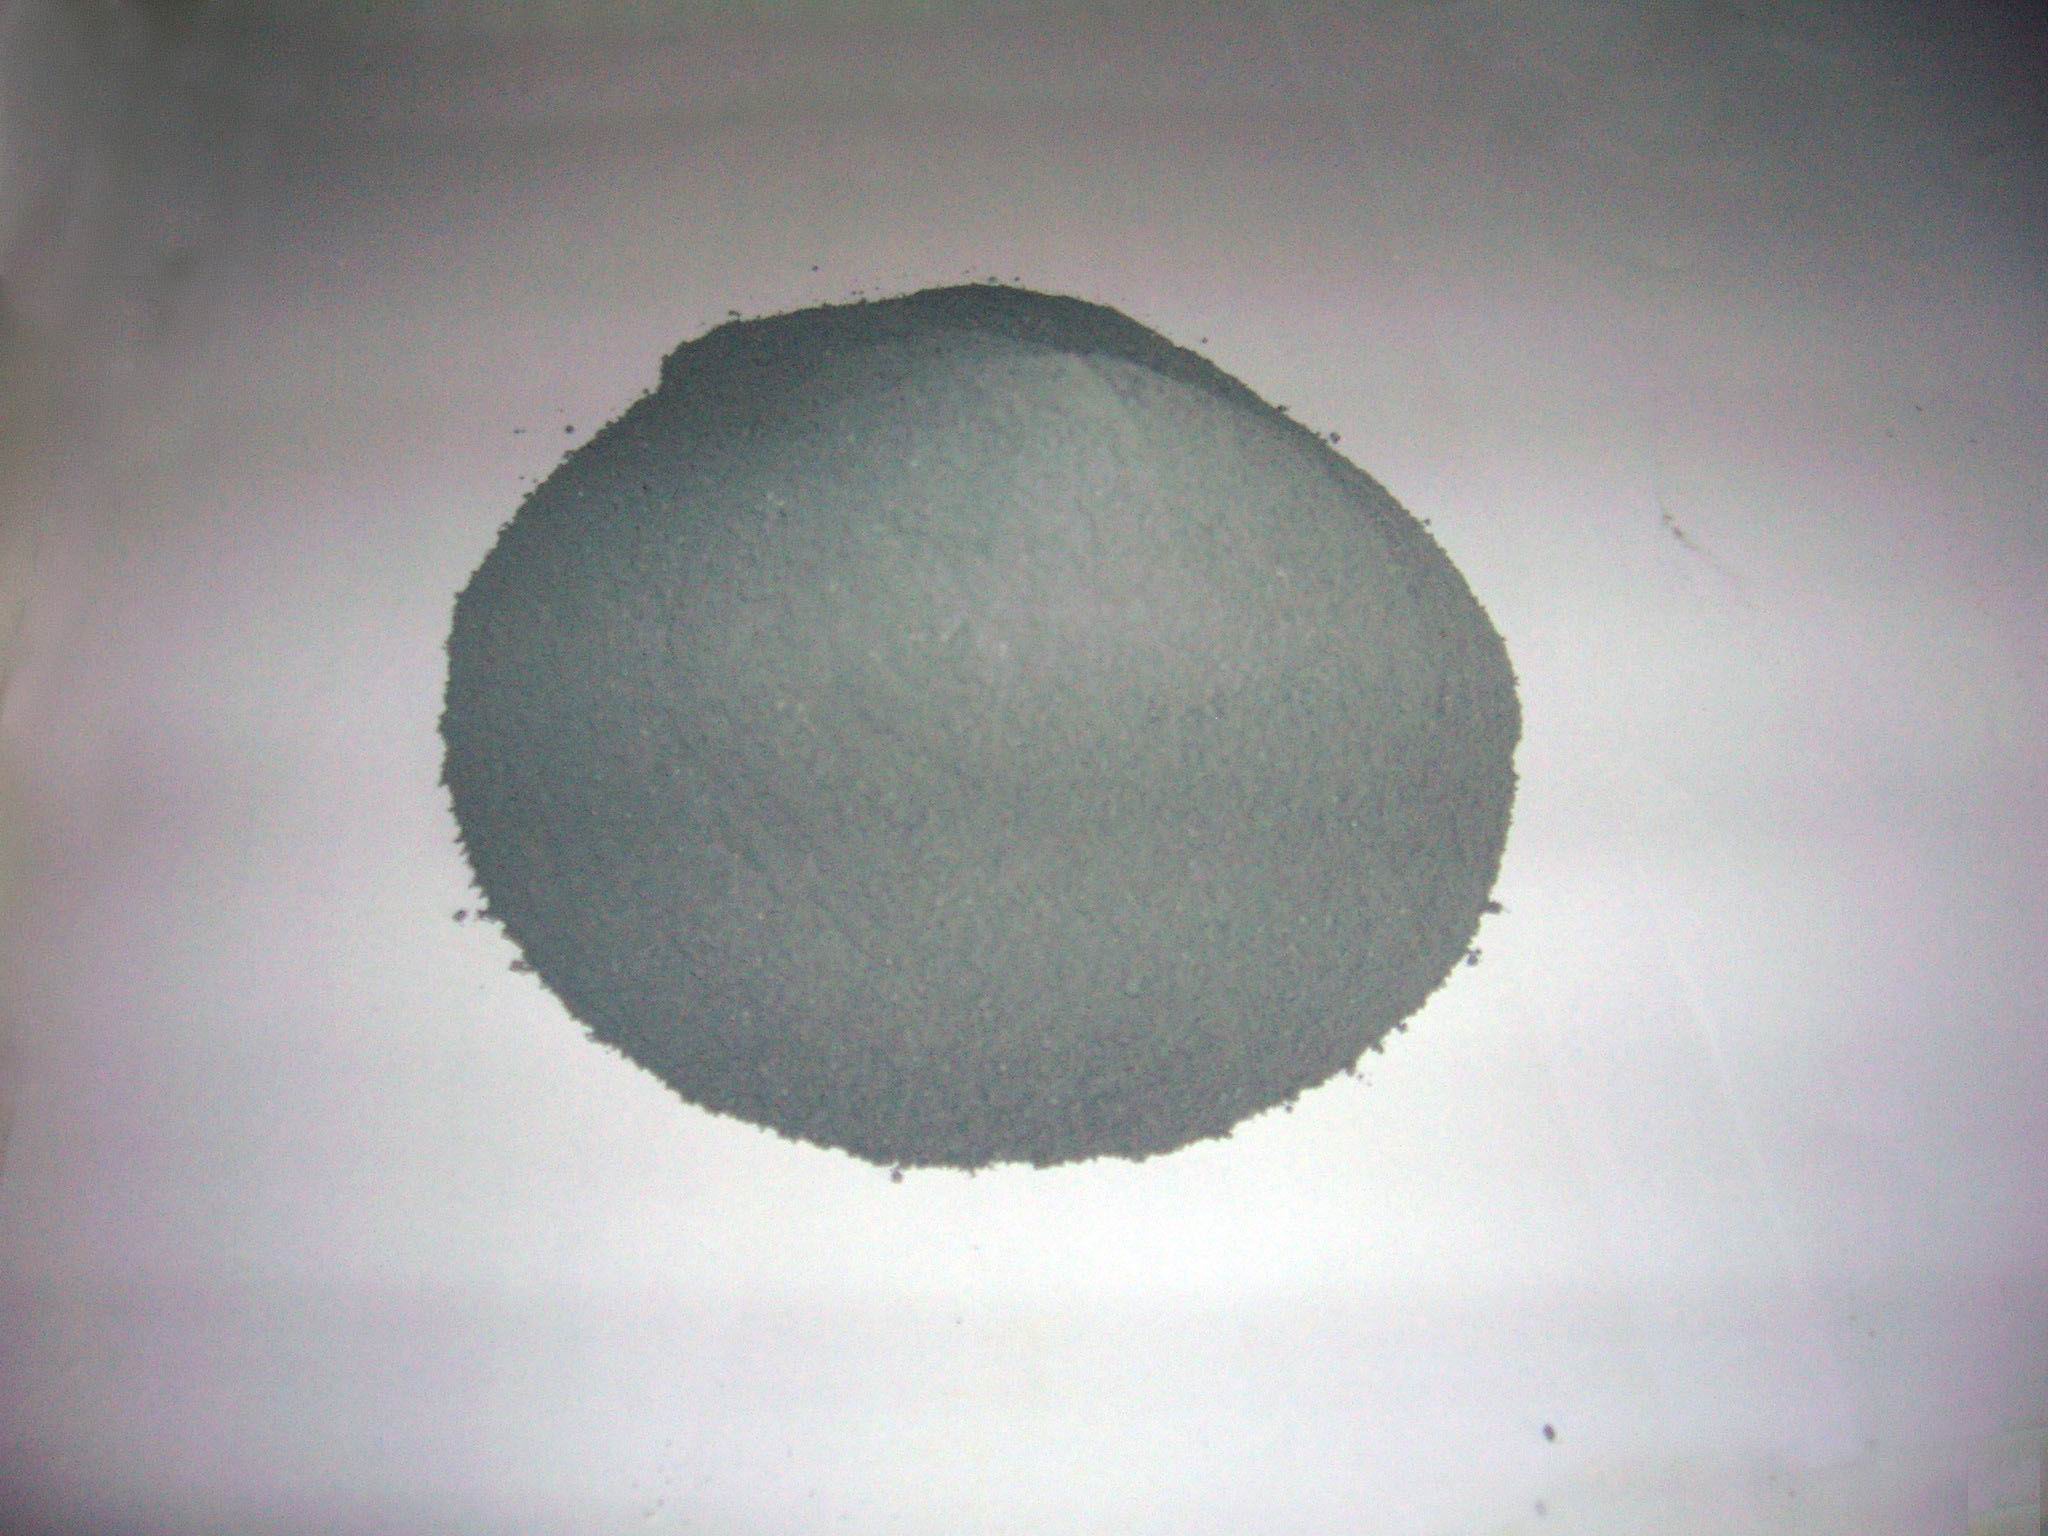 硅灰|硅微粉是一种活性很强的建筑材料